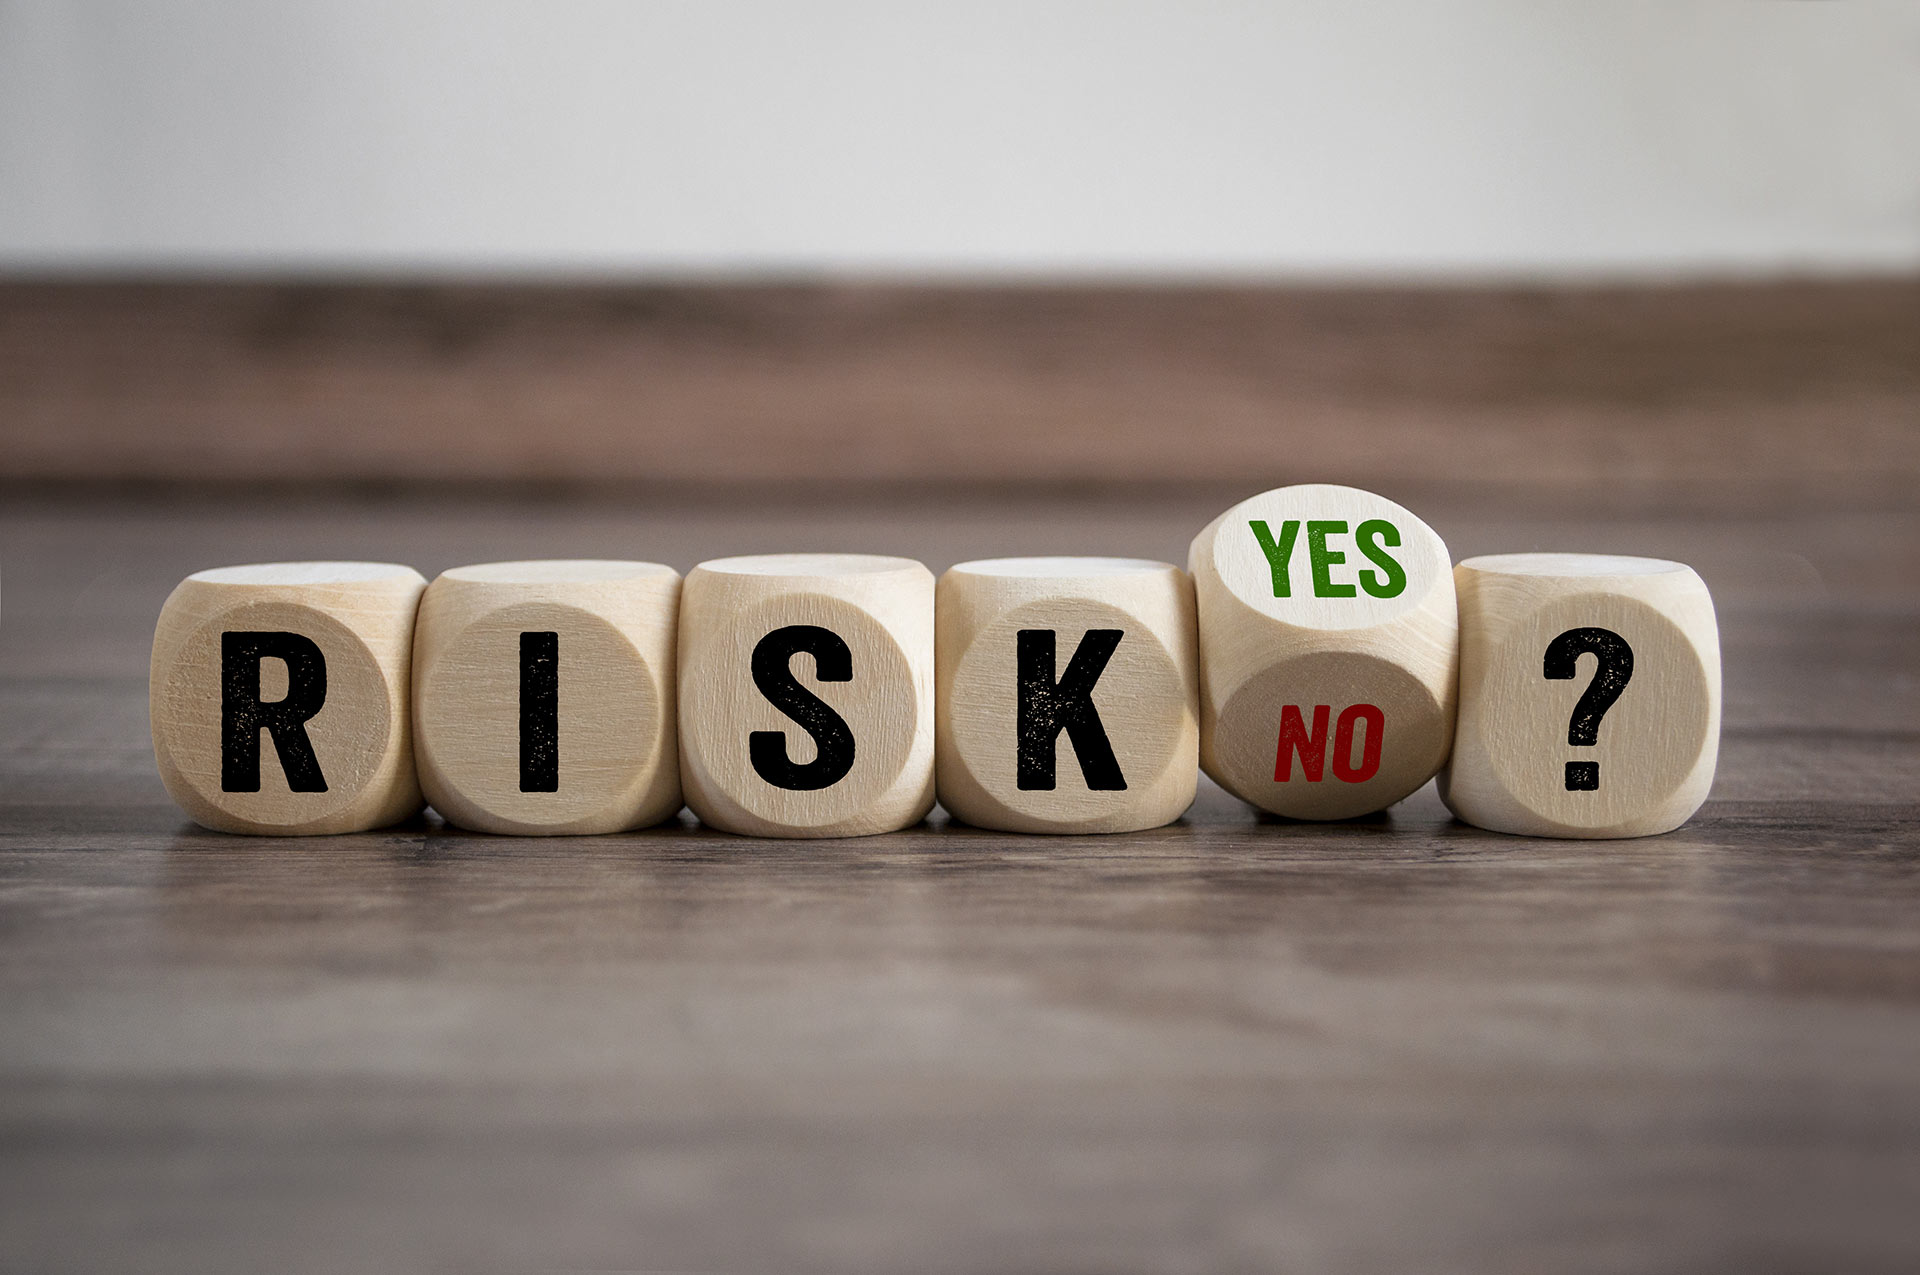 Dés formant le mot "Risks ?" avec un dé montrant la réponse "yes" et "no"